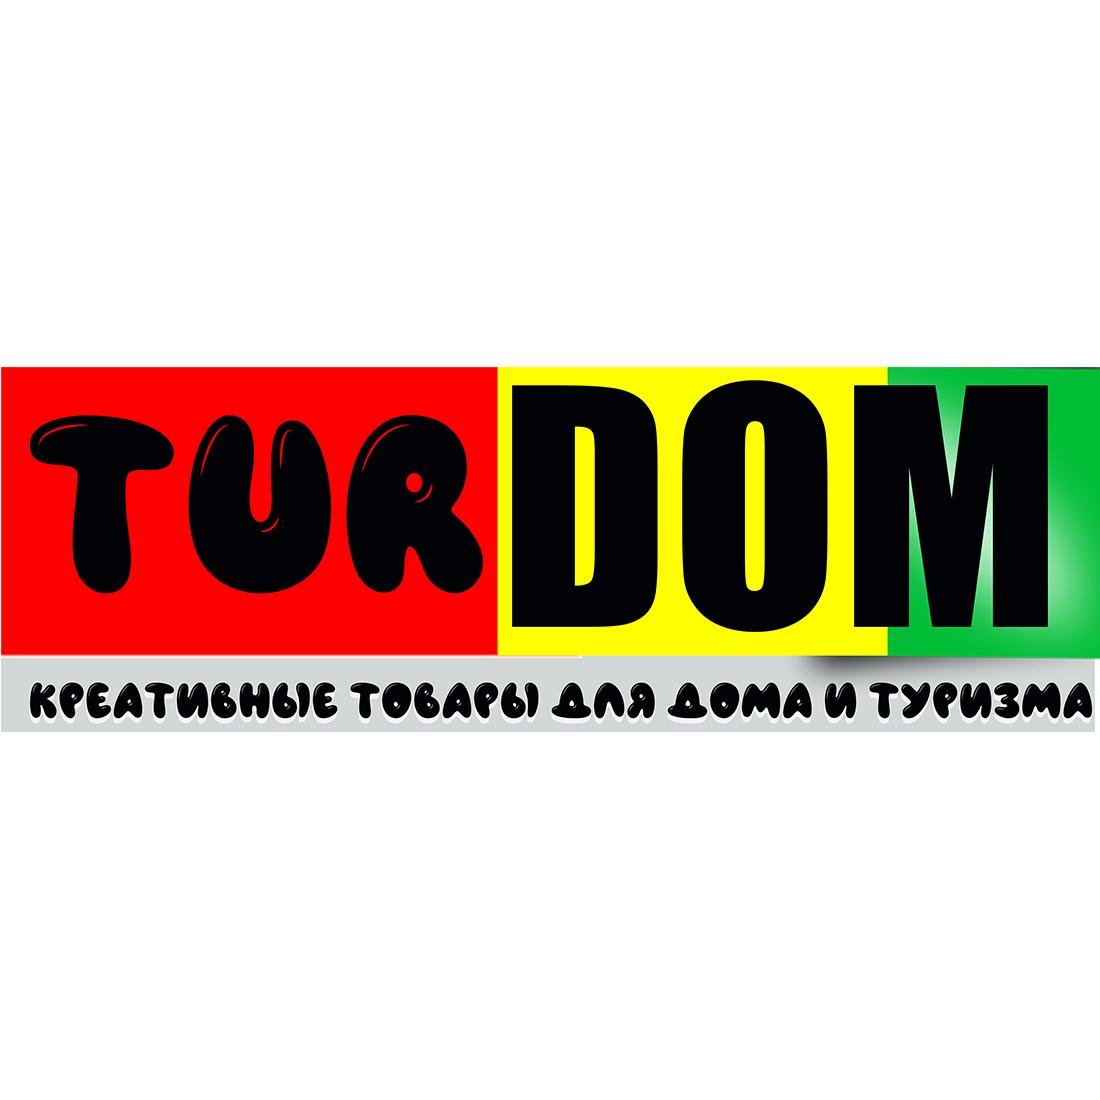 TurDom